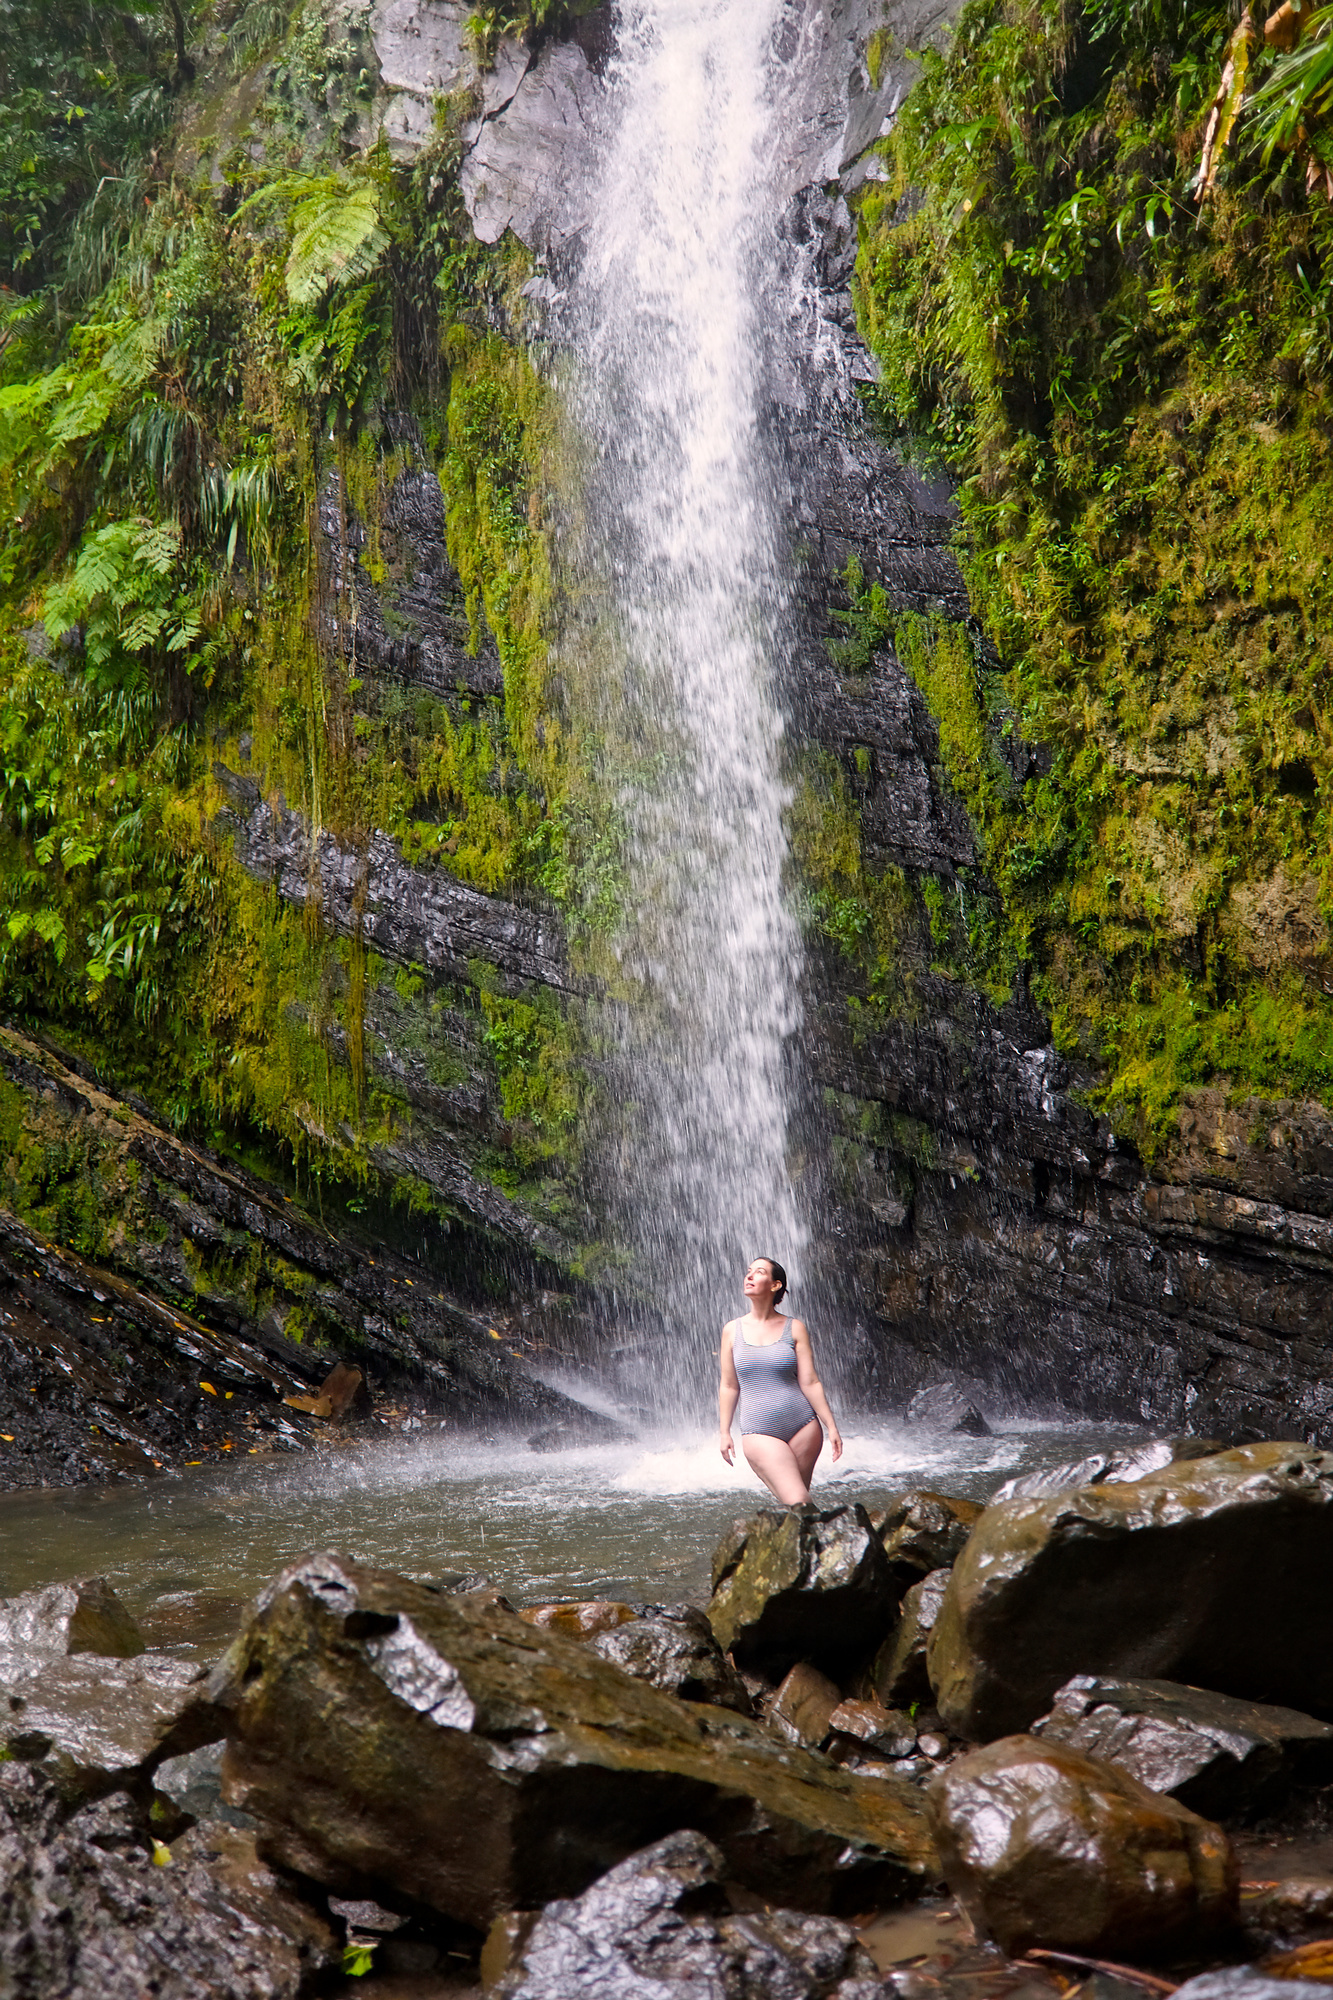 Alyssa stands below Juan Diego Falls